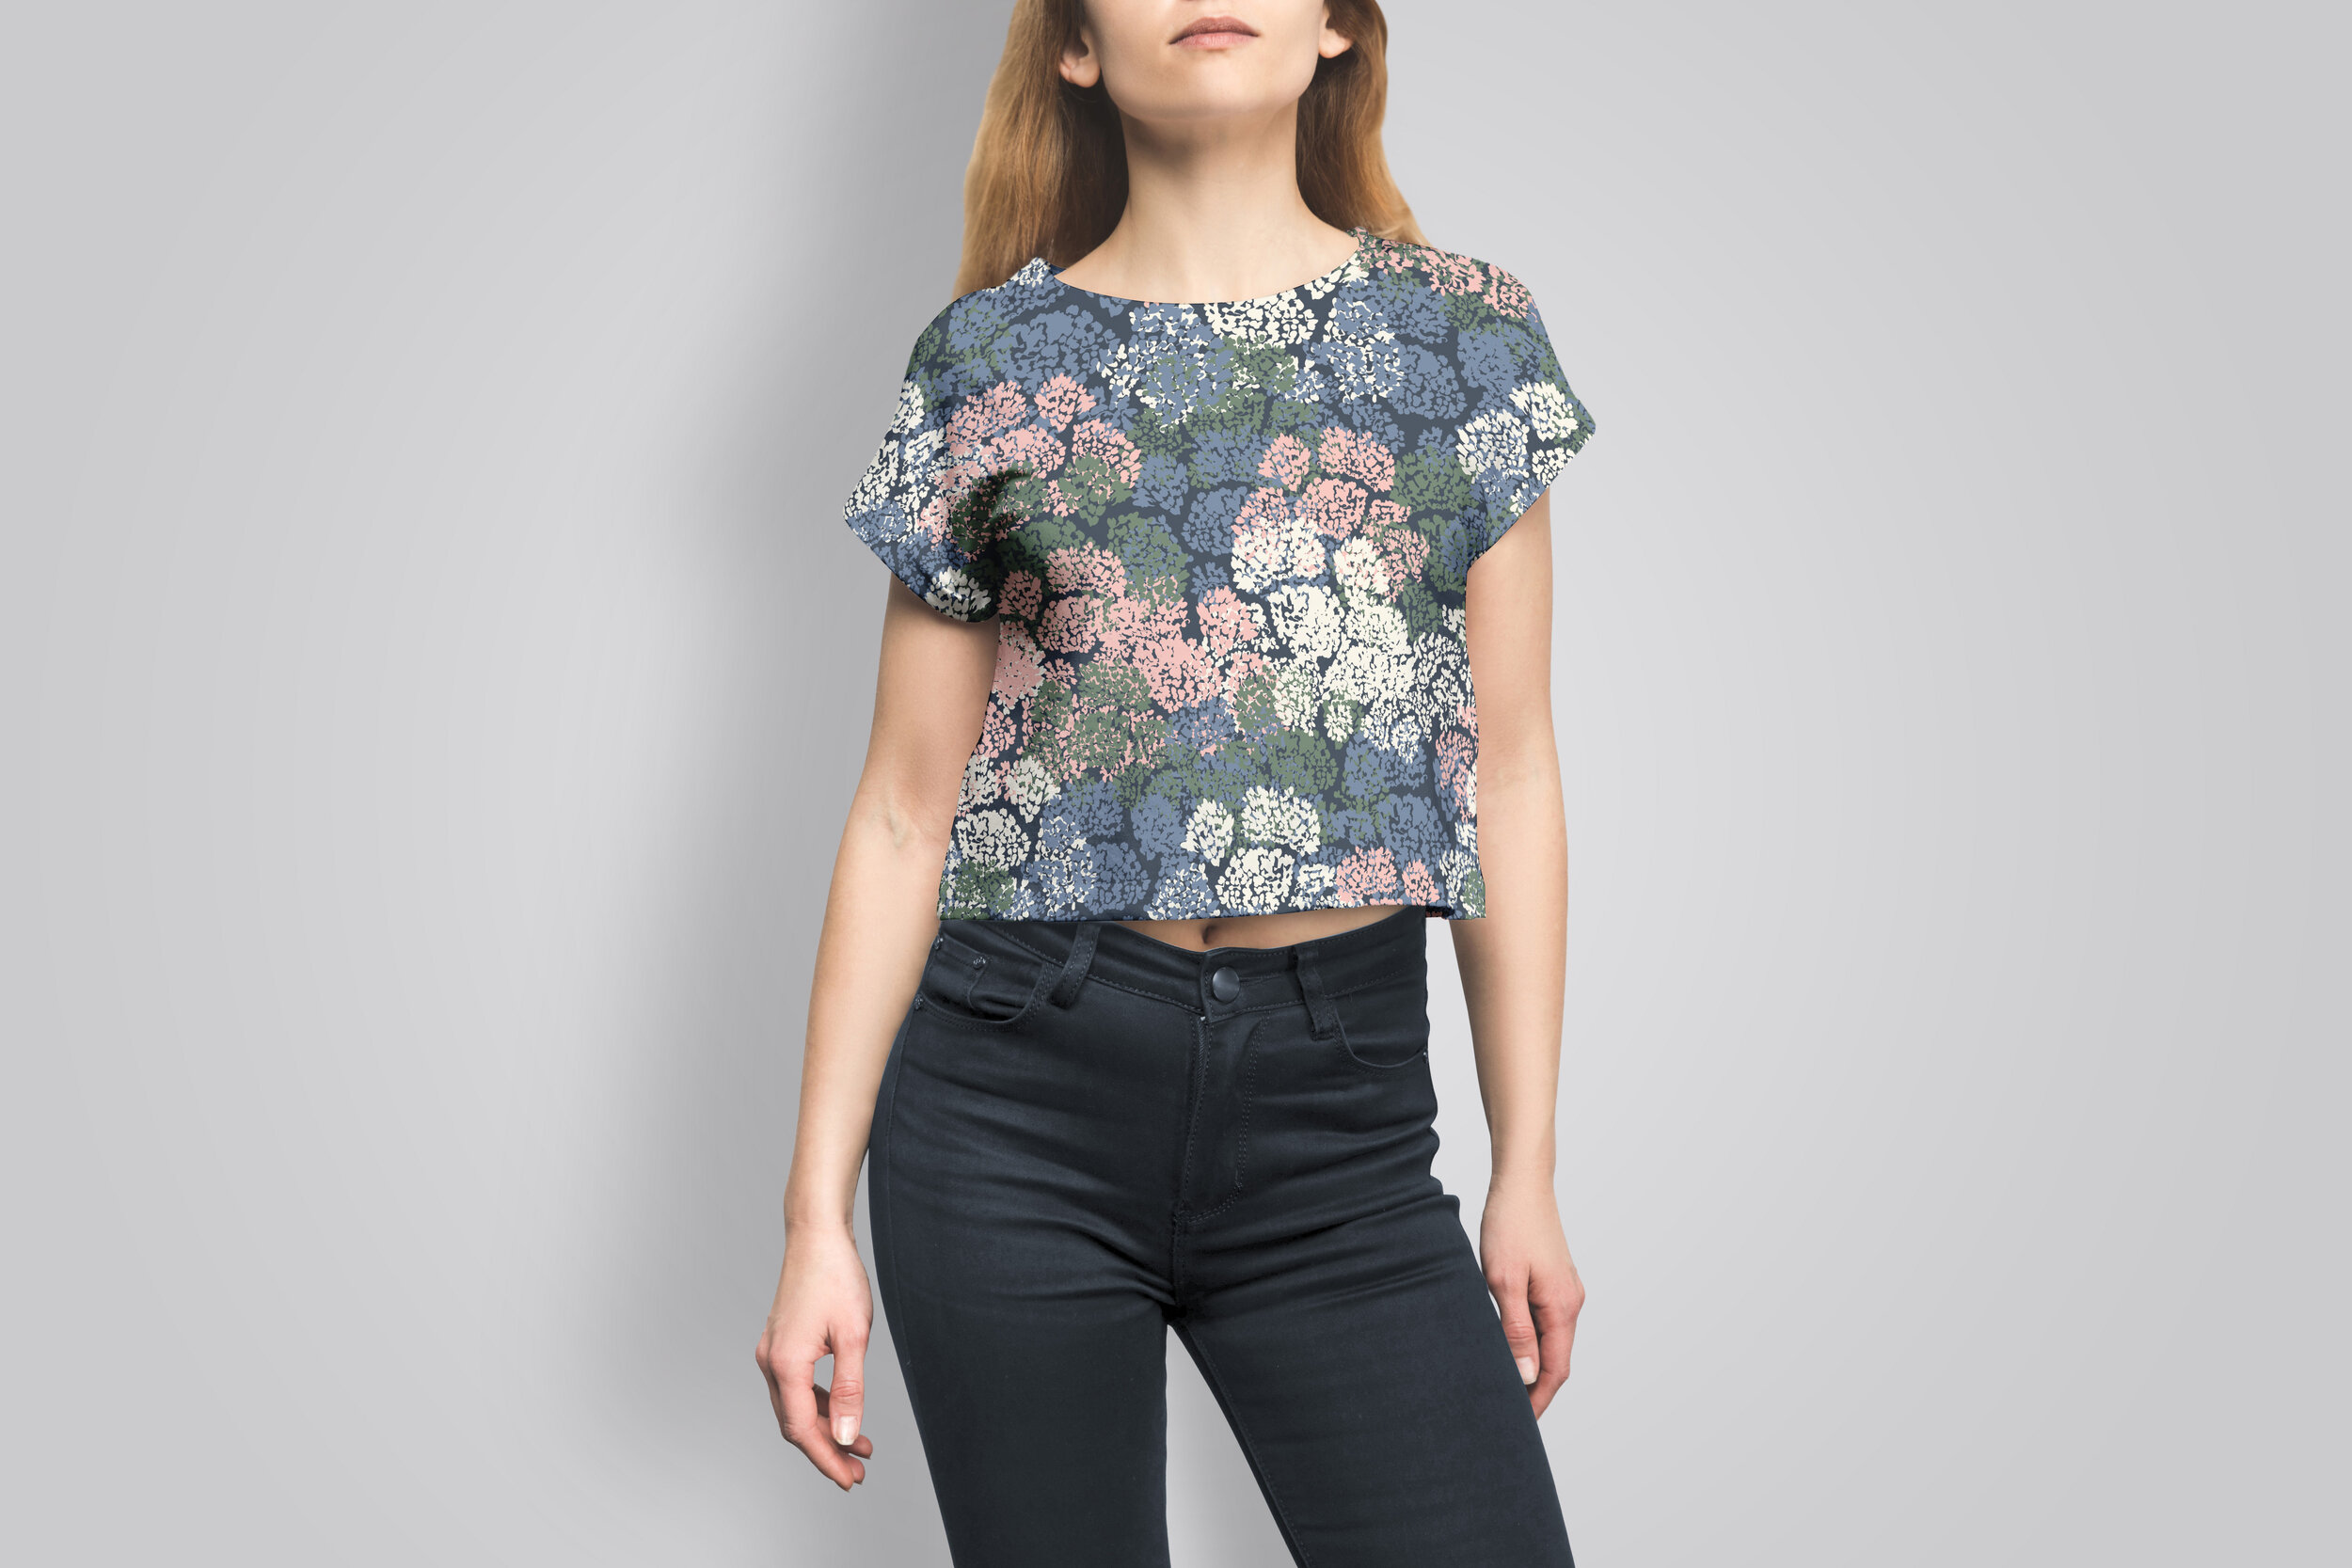 female-crop-top-tshirt-mockup.jpg